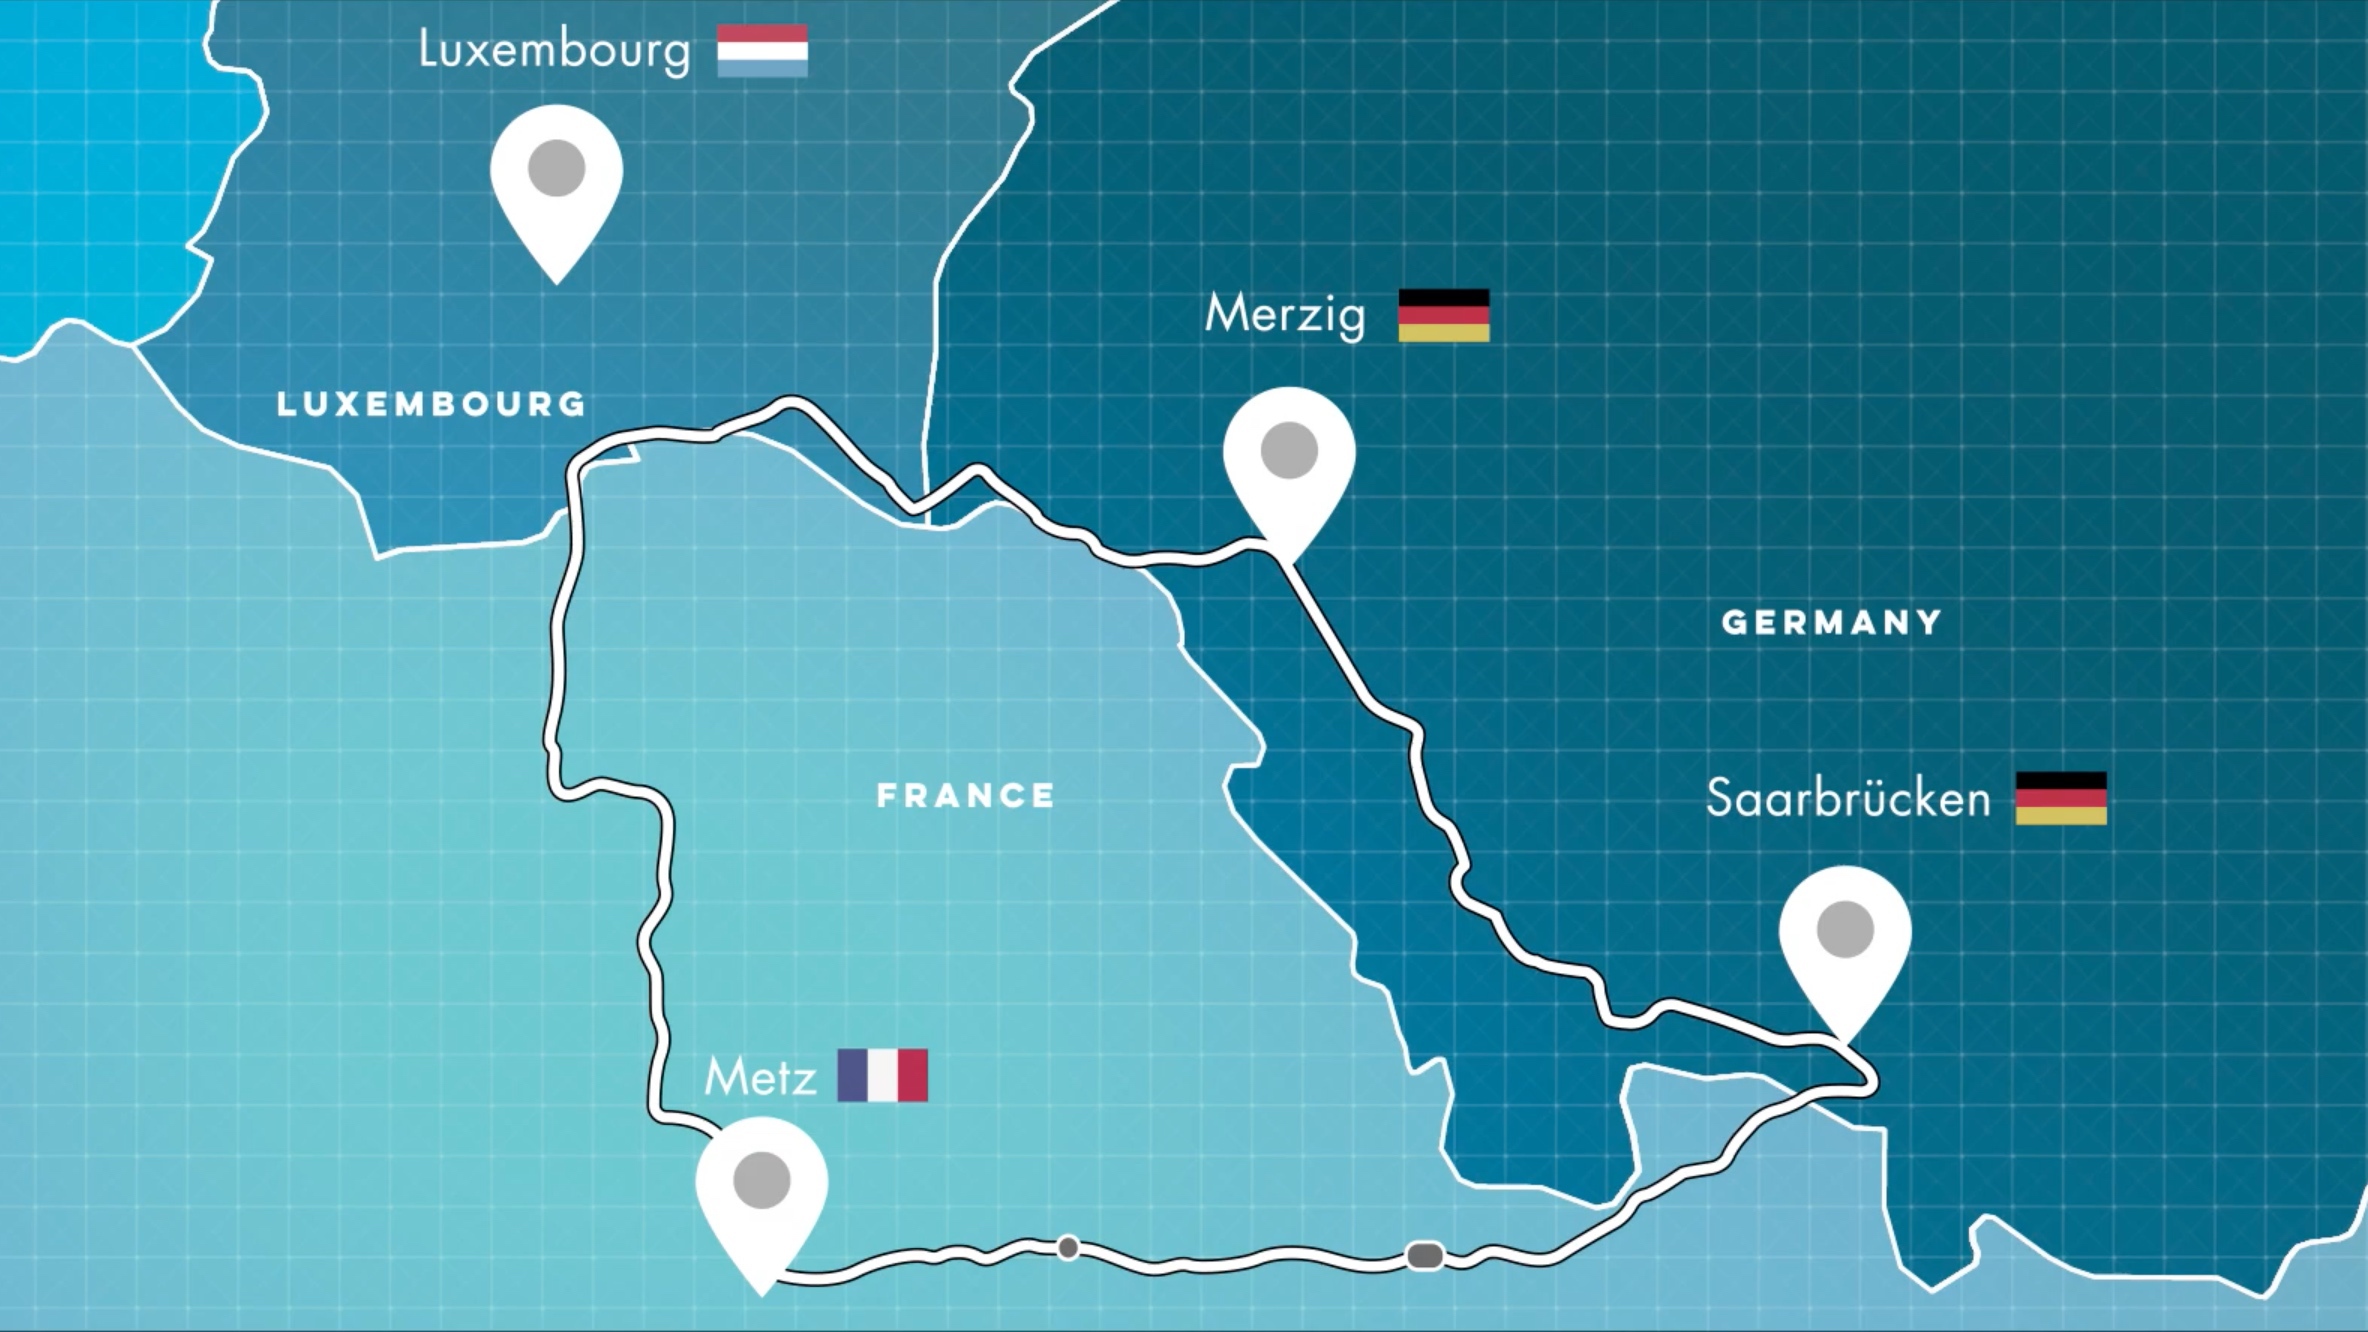 Karte des grenzüberschreitenden Testfelds Deutschland-Frankreich-Luxemburg mit Markierung der Orte Merzig, Saarbrücken, Metz und Luxembourg